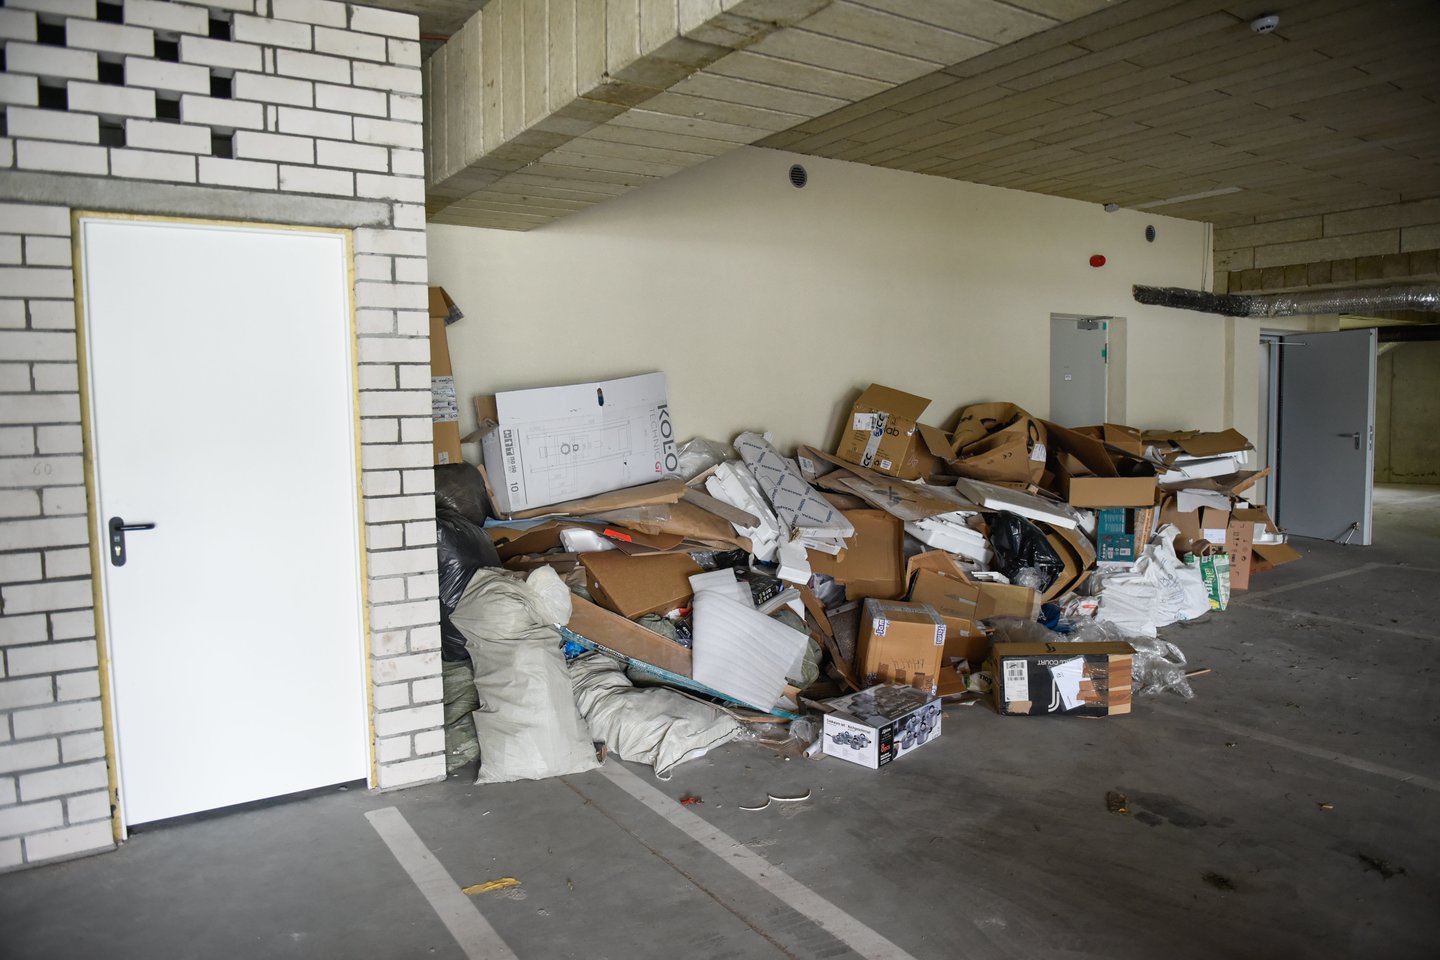 šiukšlės garaže, šiukšlės, atliekos, garažas, popierius, kartonas, popieriaus atliekos<br>D.Umbraso nuotr.